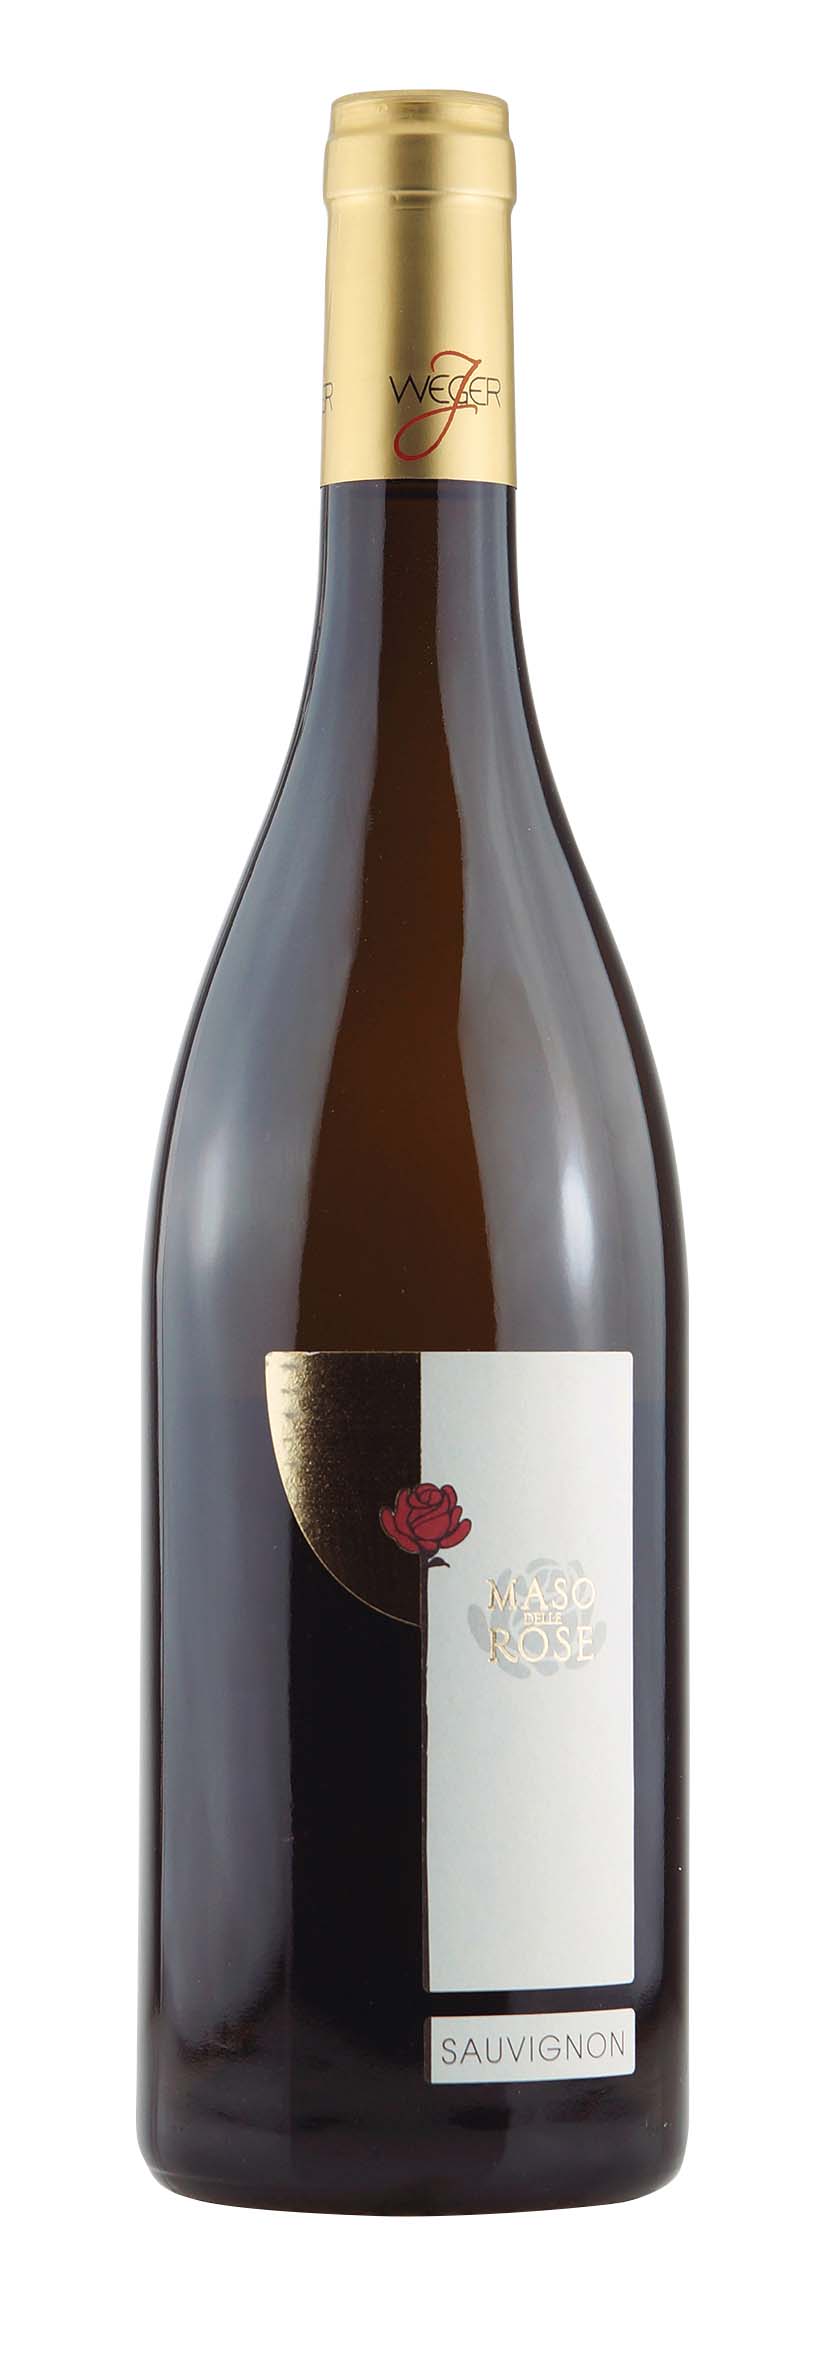 Alto Adige DOC Sauvignon Blanc Maso delle Rose 2015